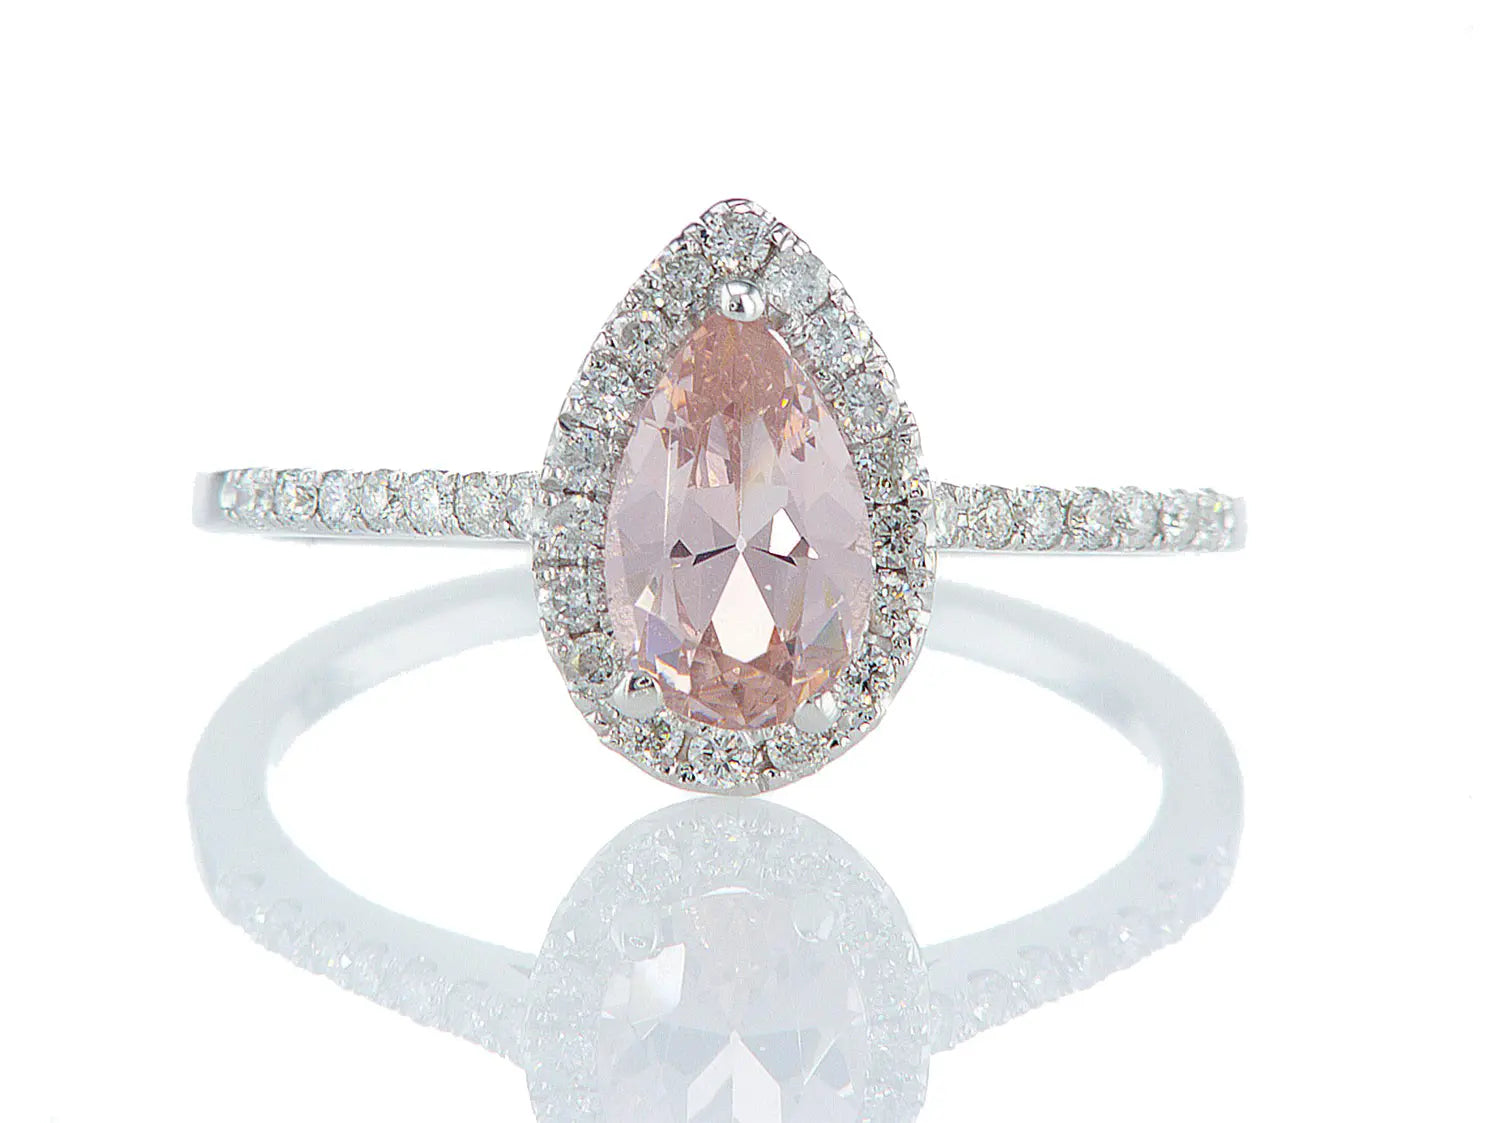 טבעת אור-פז Fermond Jewelery